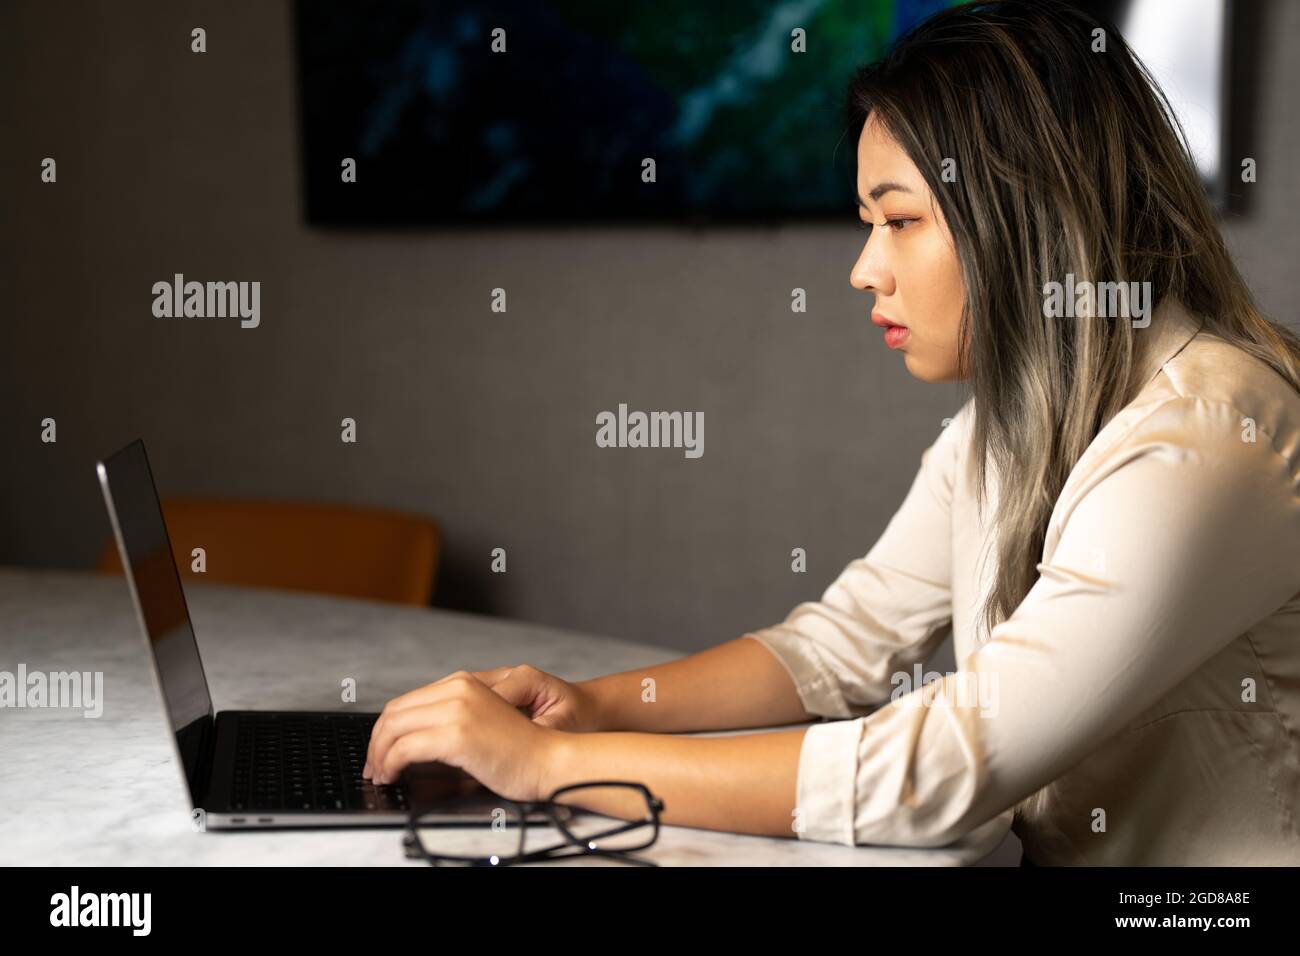 Junger asiatischer Datenwissenschaftler, der an der Datenanalyse arbeitet Stockfoto